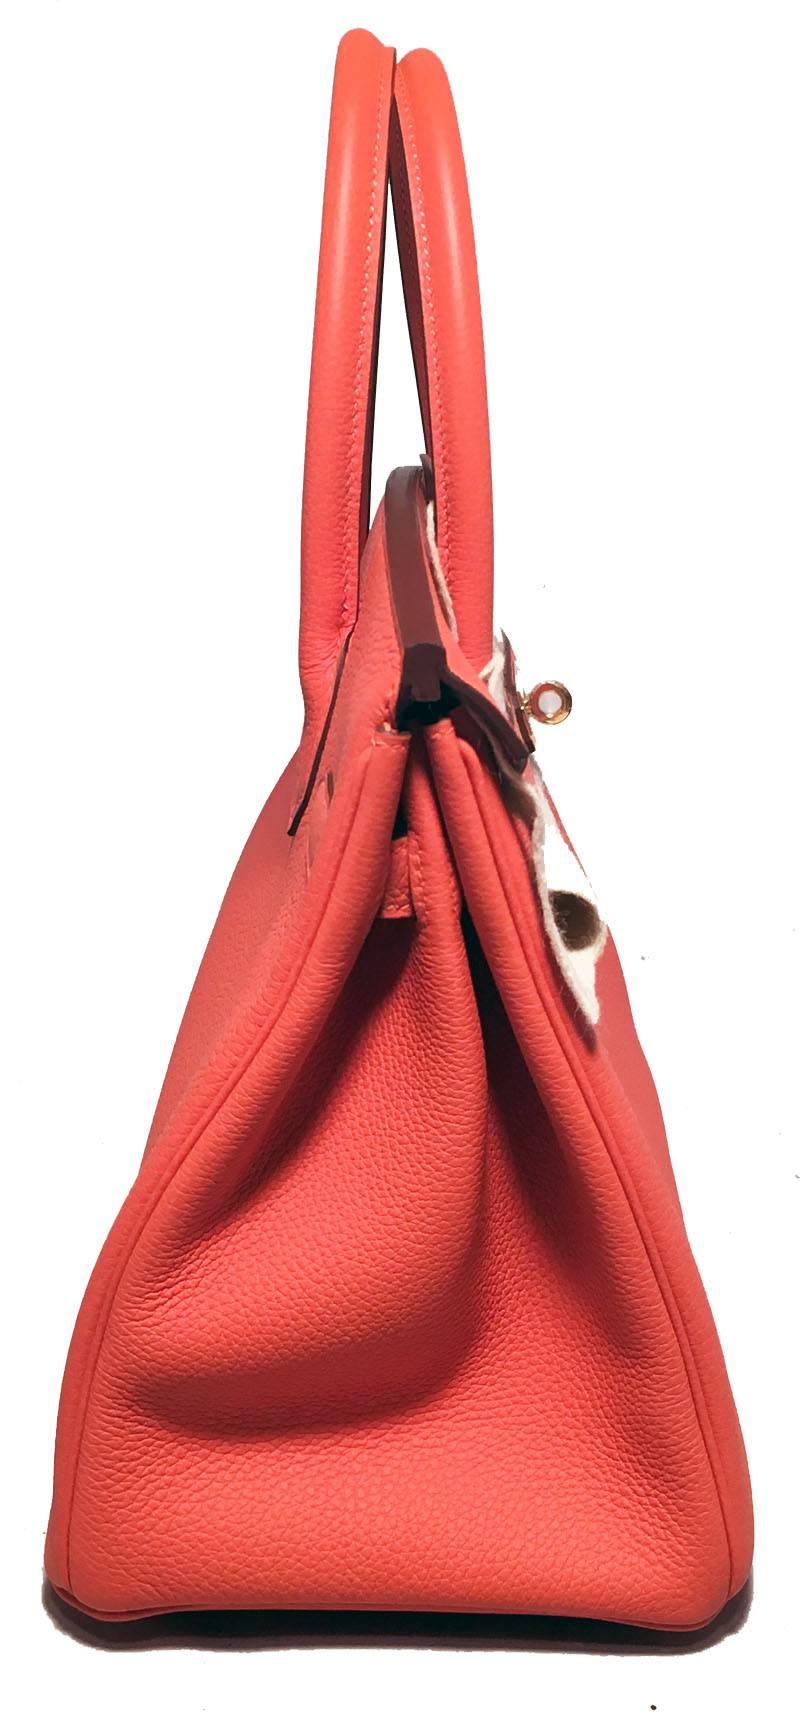 Pink Hermes 30cm New WOT Feu Togo Leather Birkin Bag